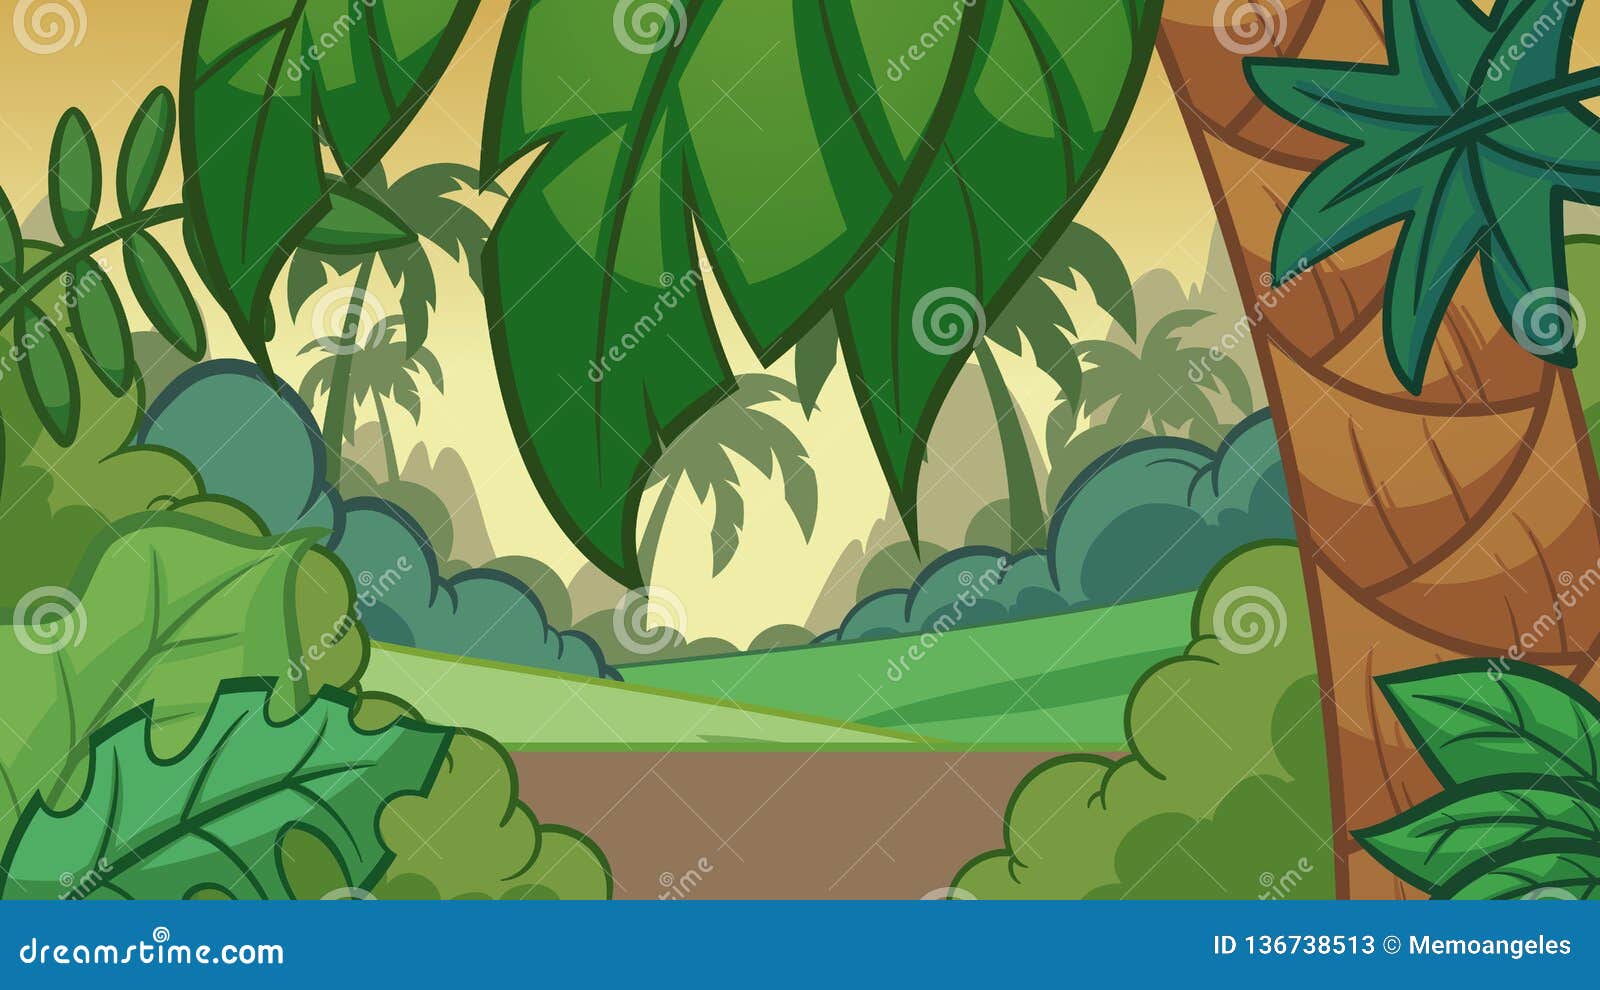 cartoon jungle background with a big palm tree